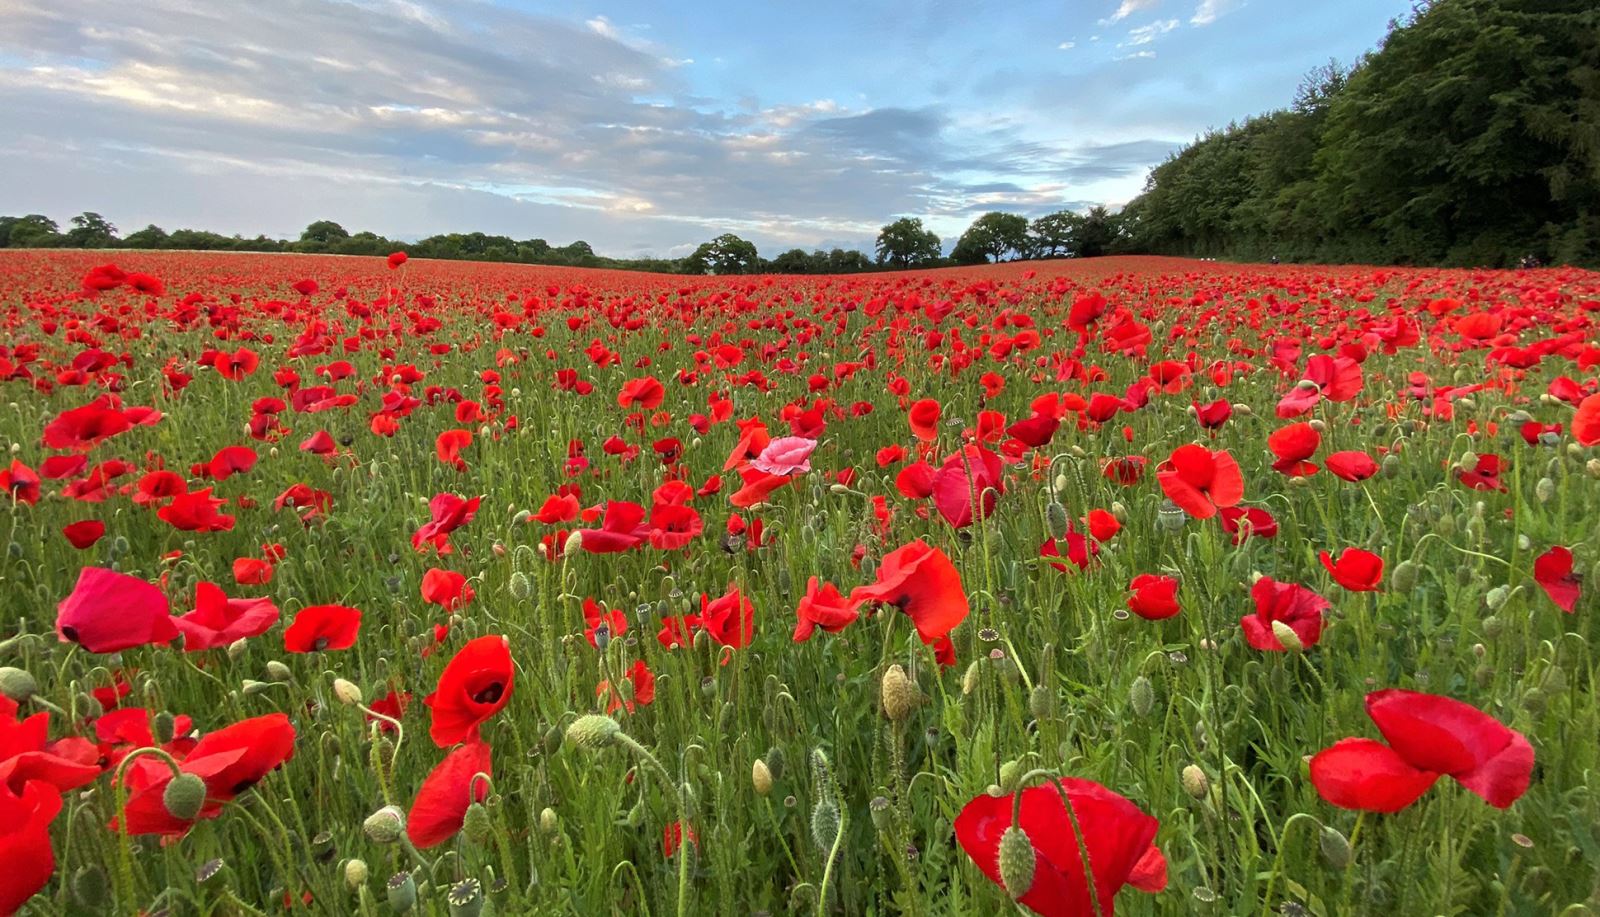 Field of Poppies near Basingstoke